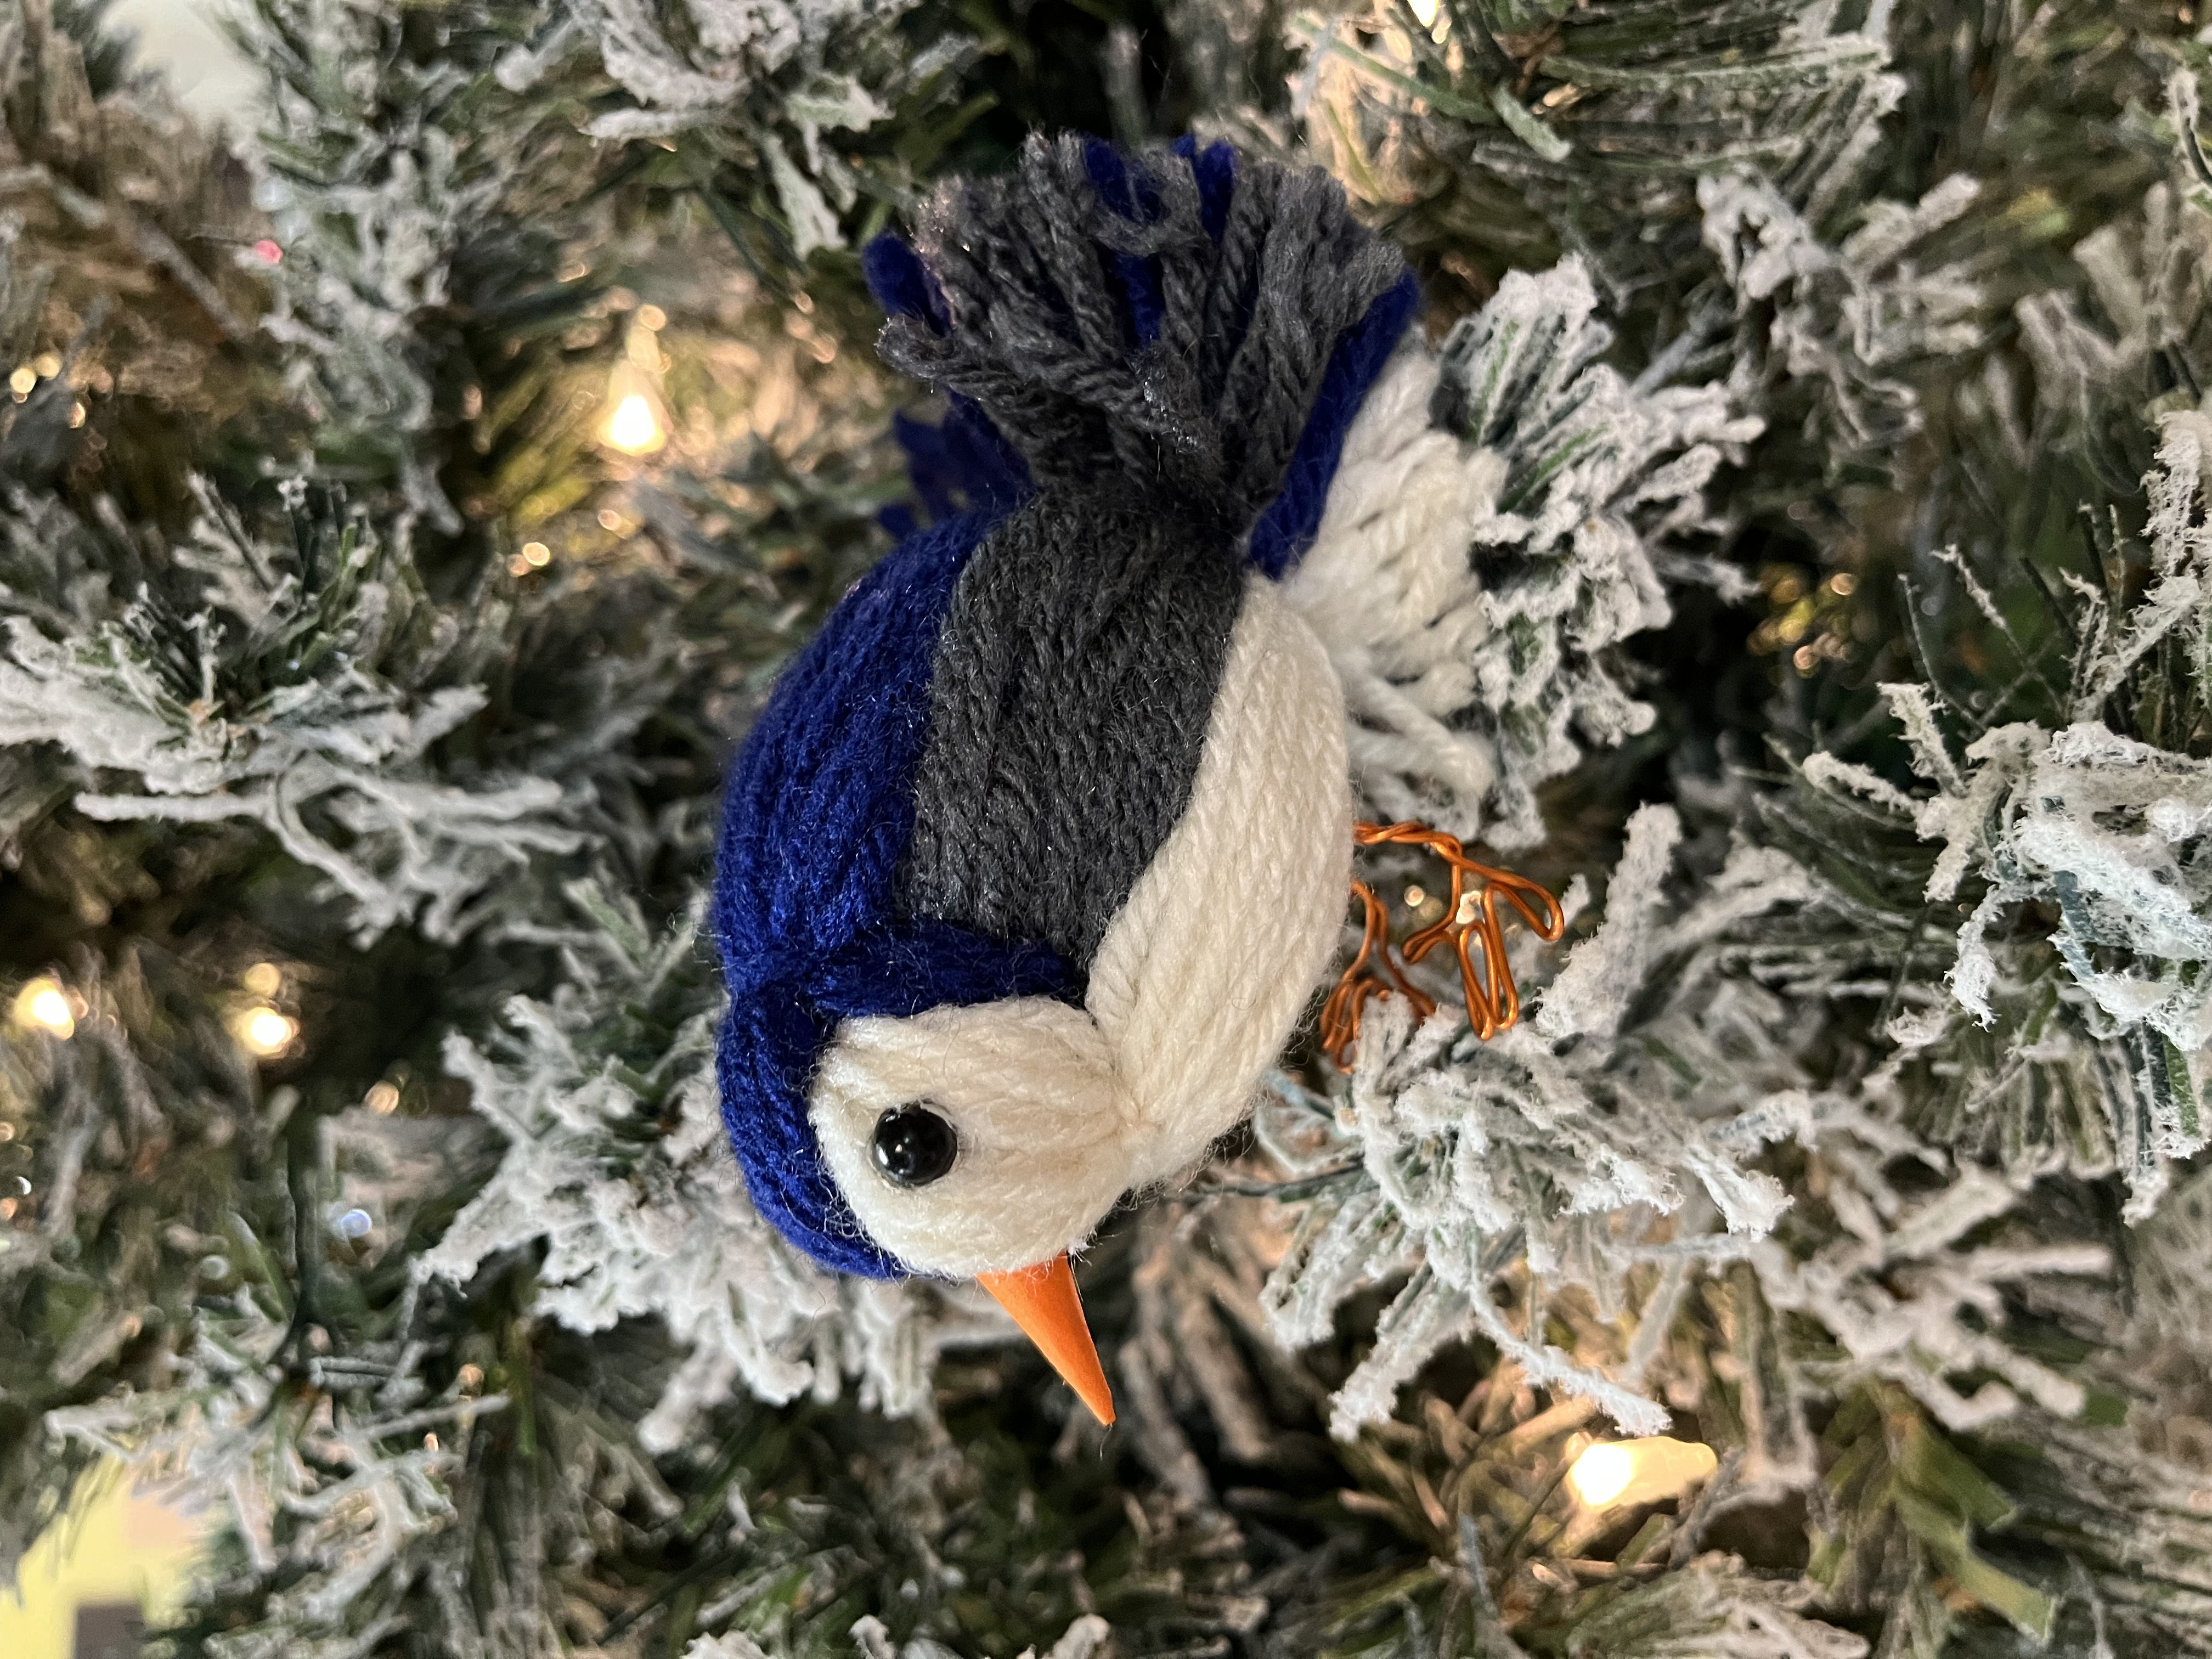 Yarn bird decoration sitting in a tree